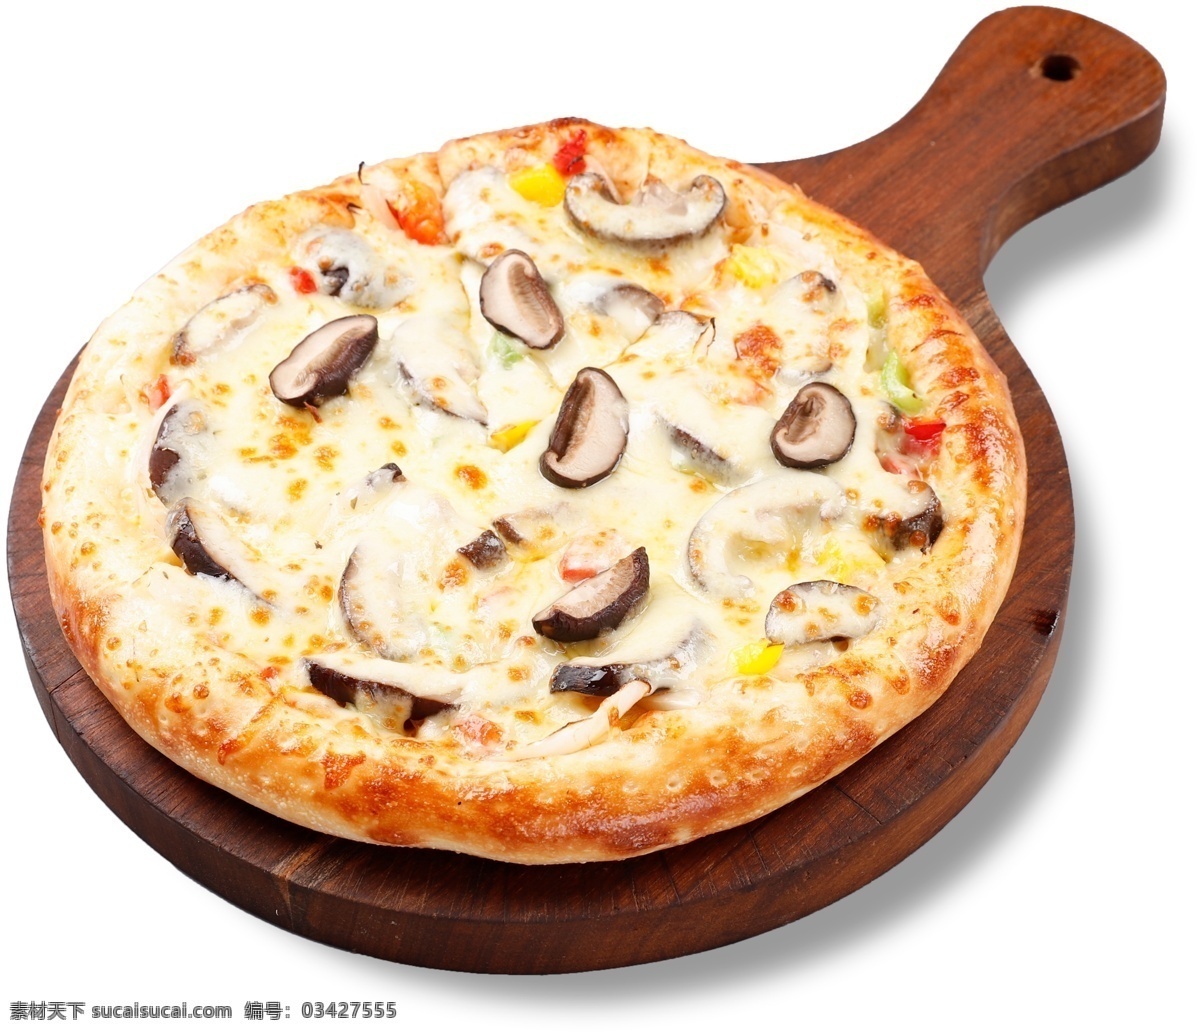 素什锦披萨 免抠图 什锦披萨 蘑菇披萨 意式披萨 披萨 披萨切块 披萨特写 披萨素材 口味披萨 原味披萨 经典披萨 美味披萨 西式美食 披萨木托盘 设计素材 海报素材 餐饮素材 分层